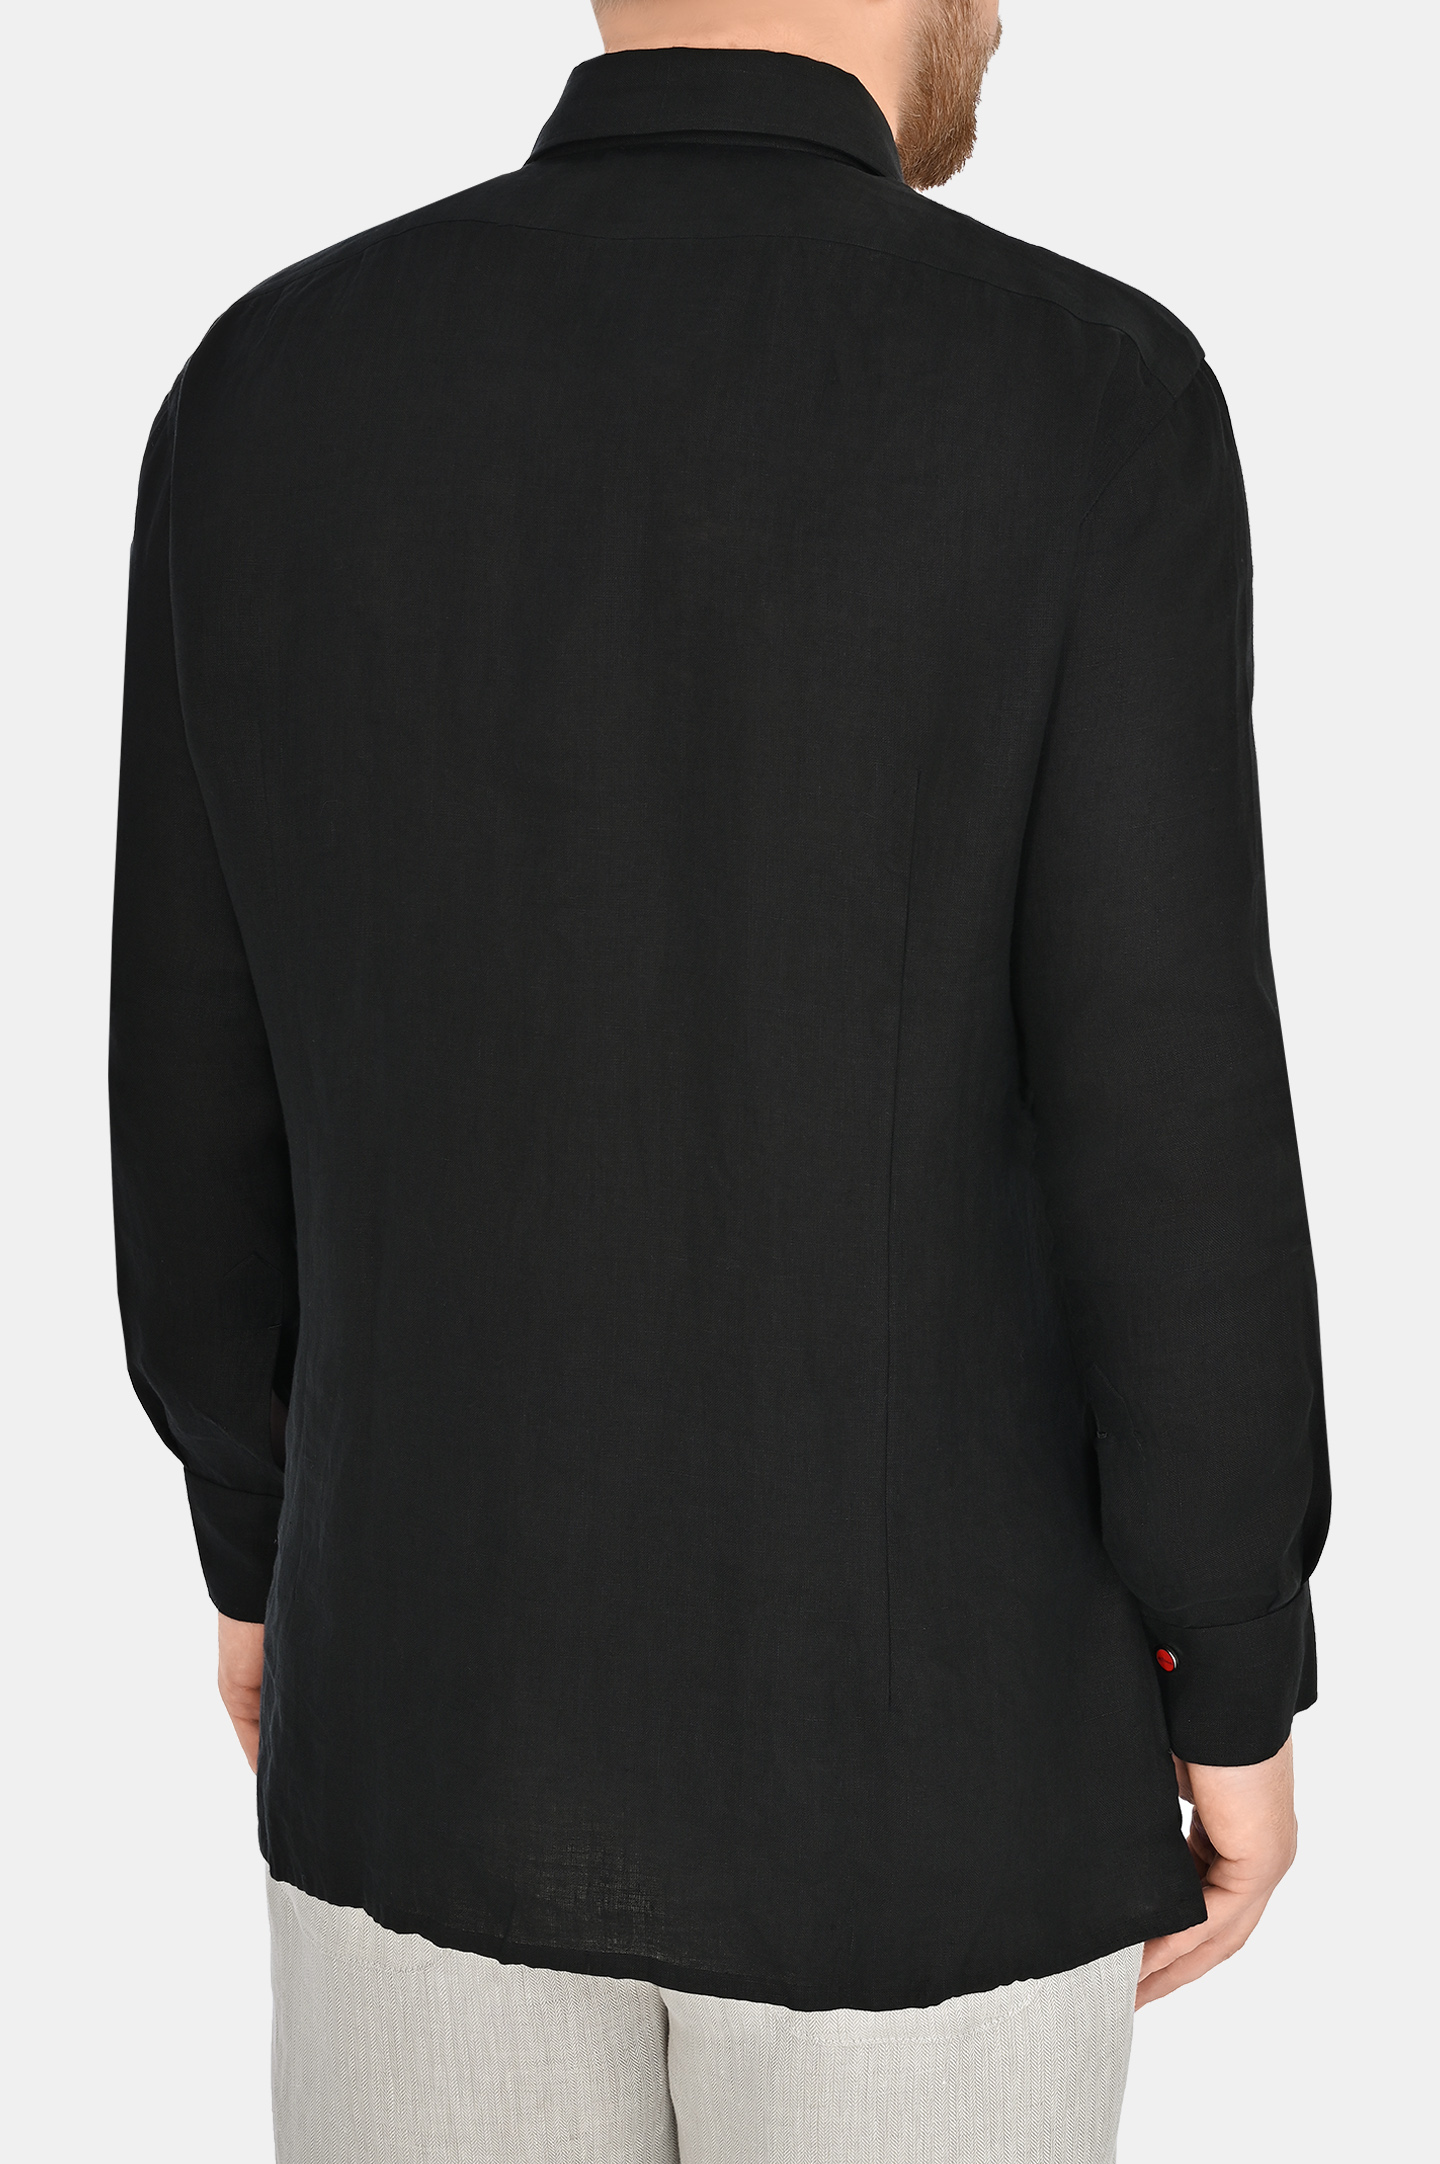 Рубашка из льна на кнопках KITON UMCNERPH088381, цвет: Черный, Мужской